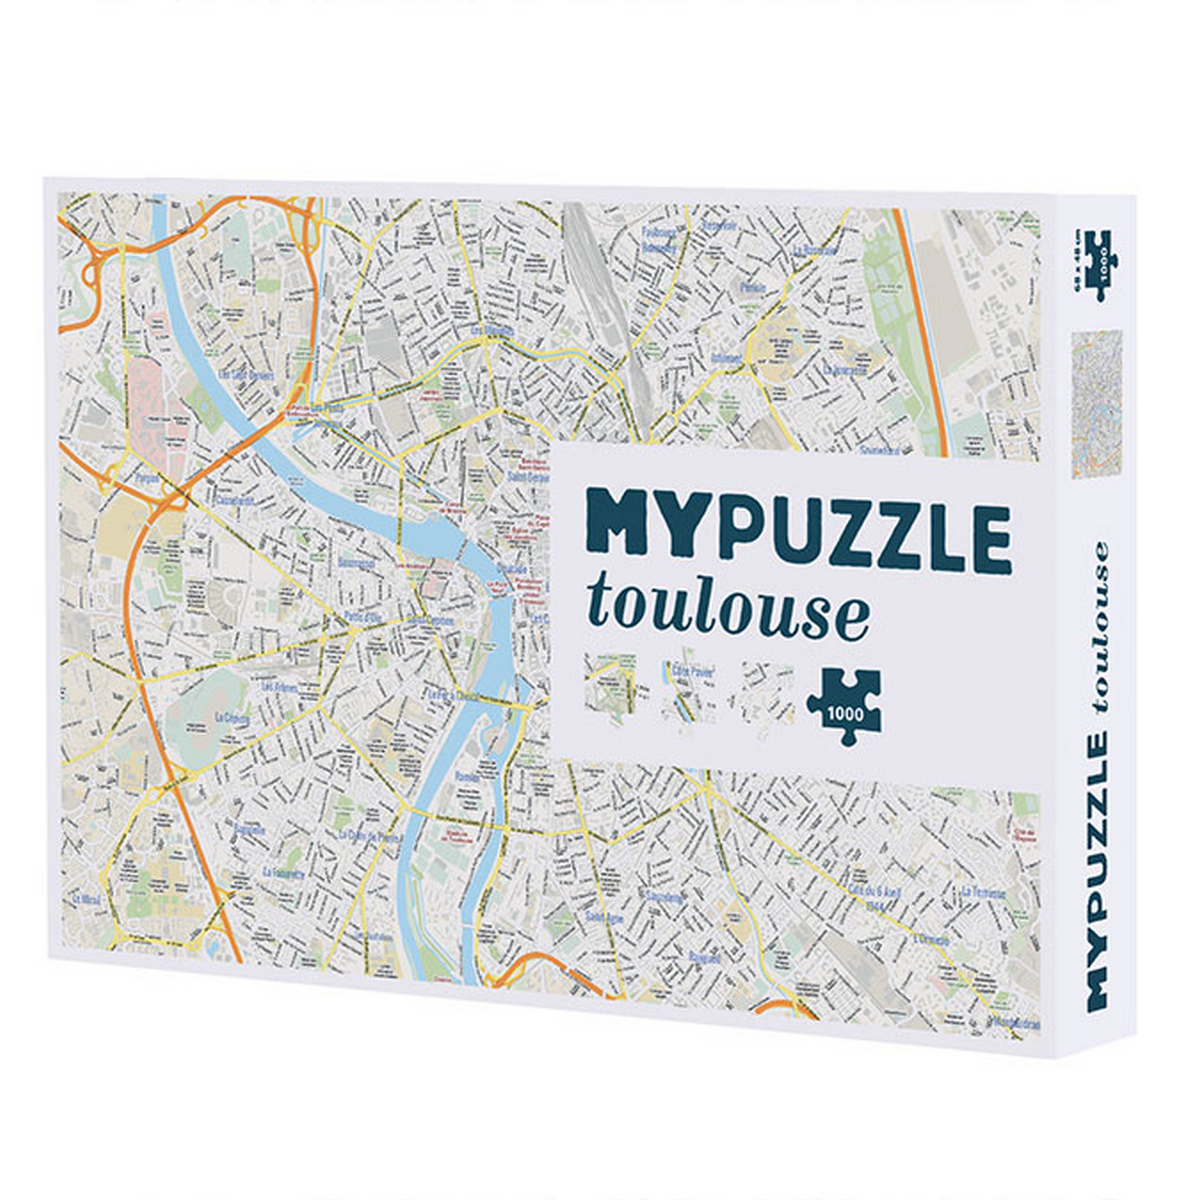 my puzzle Toulouse helvetic une idee cadeau chez ugo et lea 1